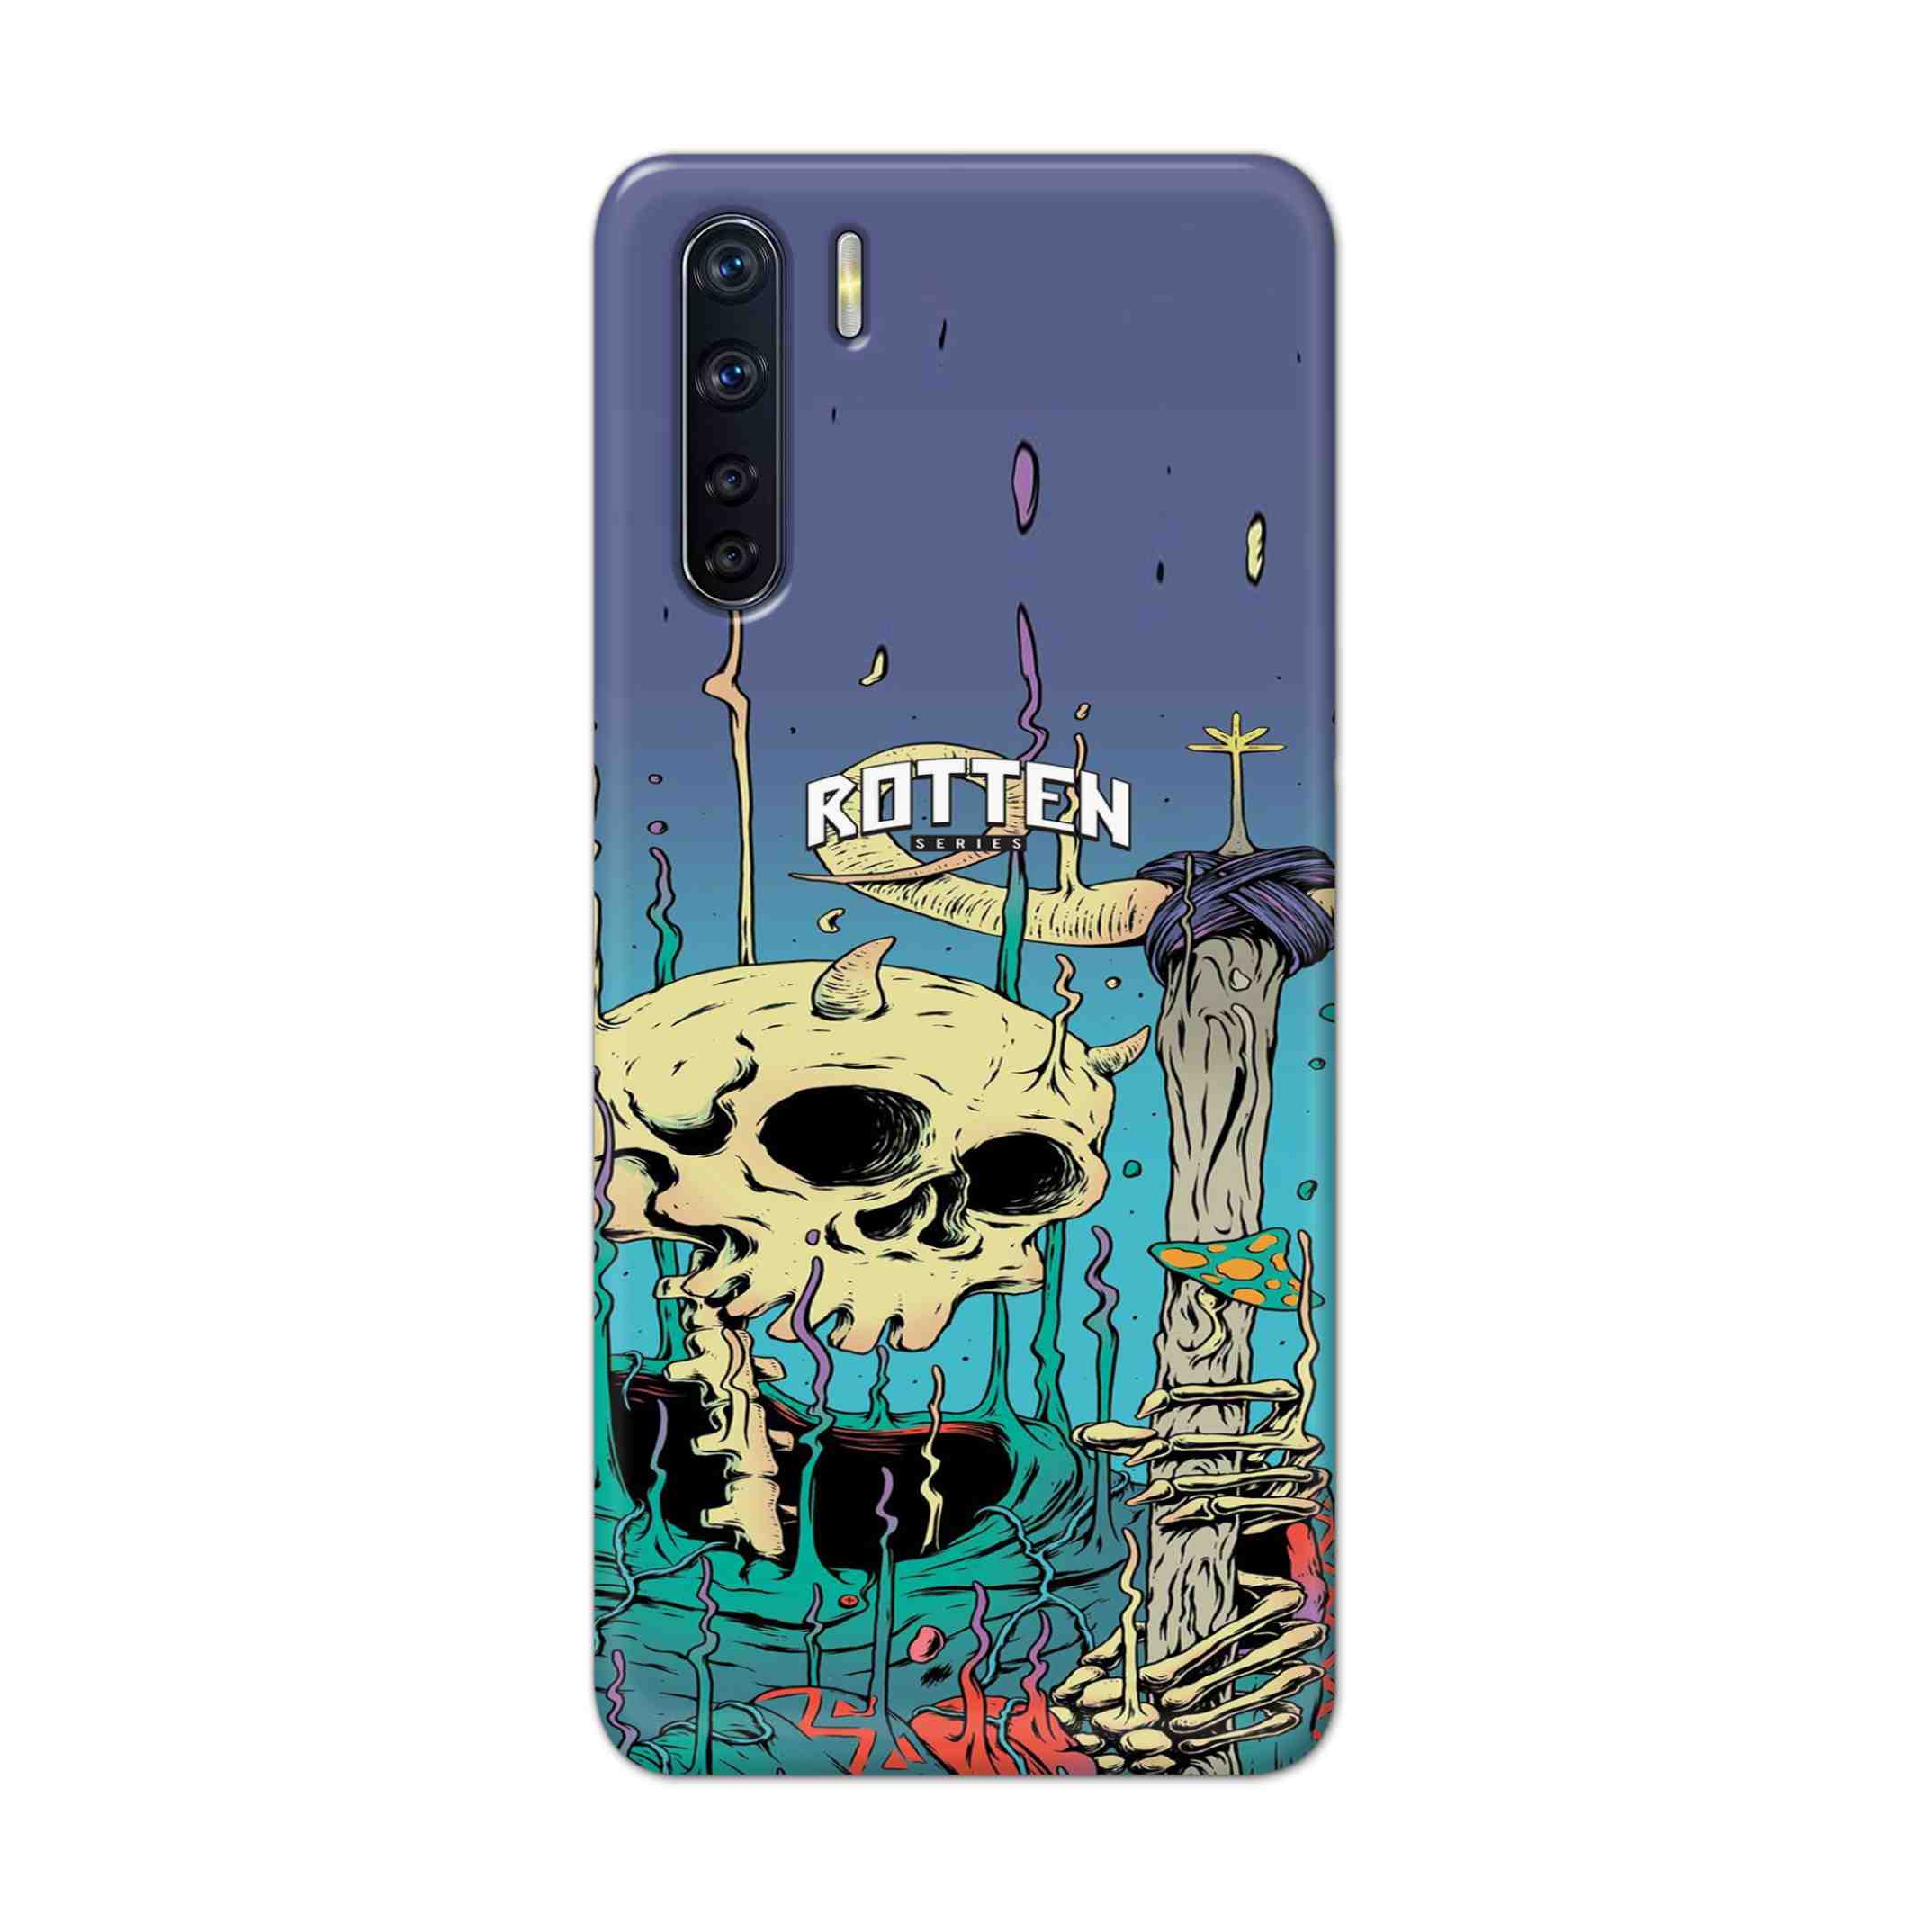 Buy Skull Hard Back Mobile Phone Case Cover For OPPO F15 Online